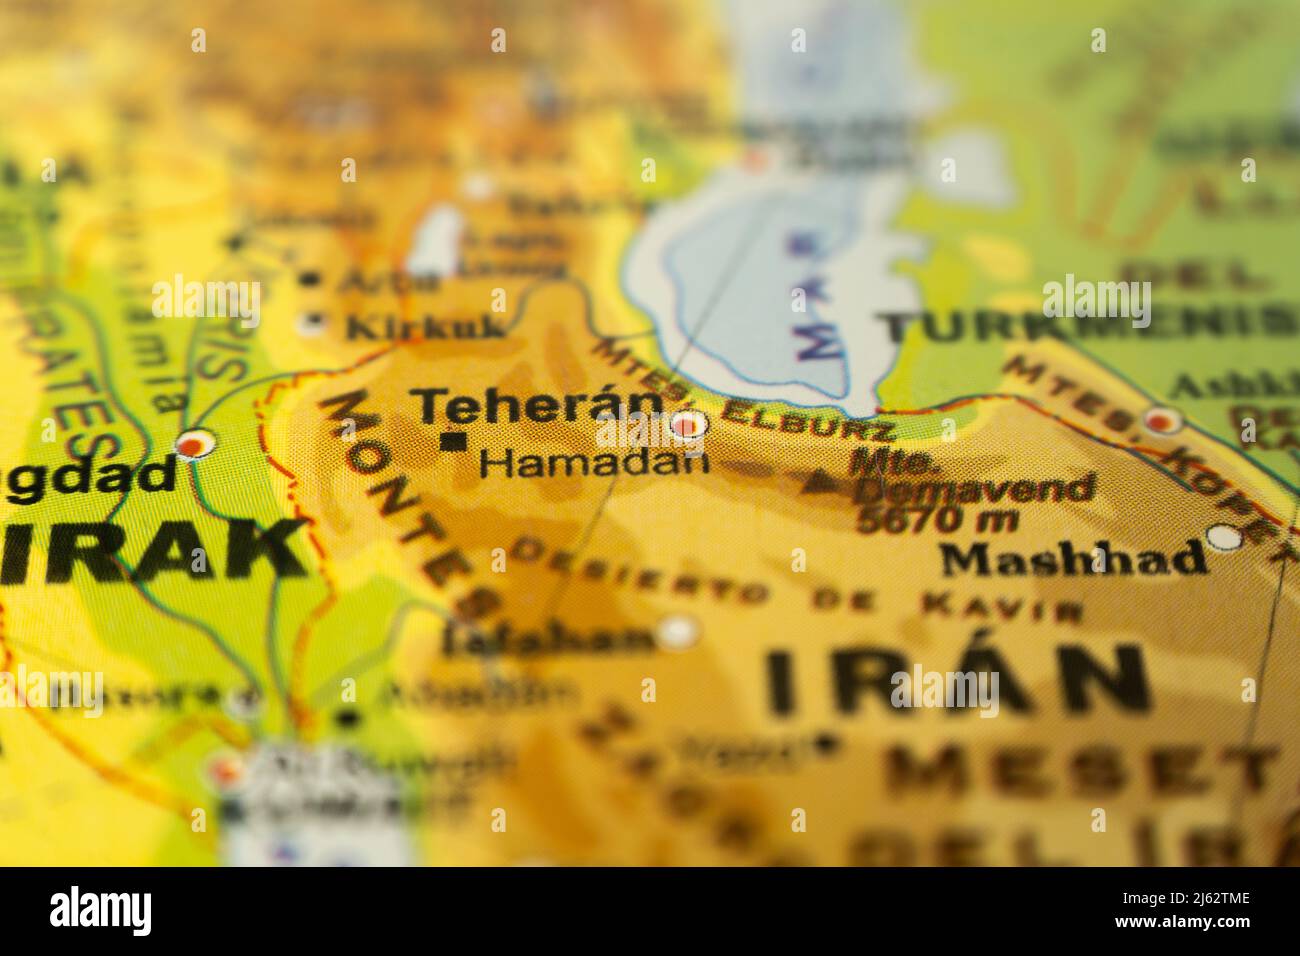 Primo piano della mappa orografica dell'Iran con Teheran come centro, con riferimenti in inglese. Cartografia concettuale, Viaggi, turismo, geografia. Differenze Foto Stock